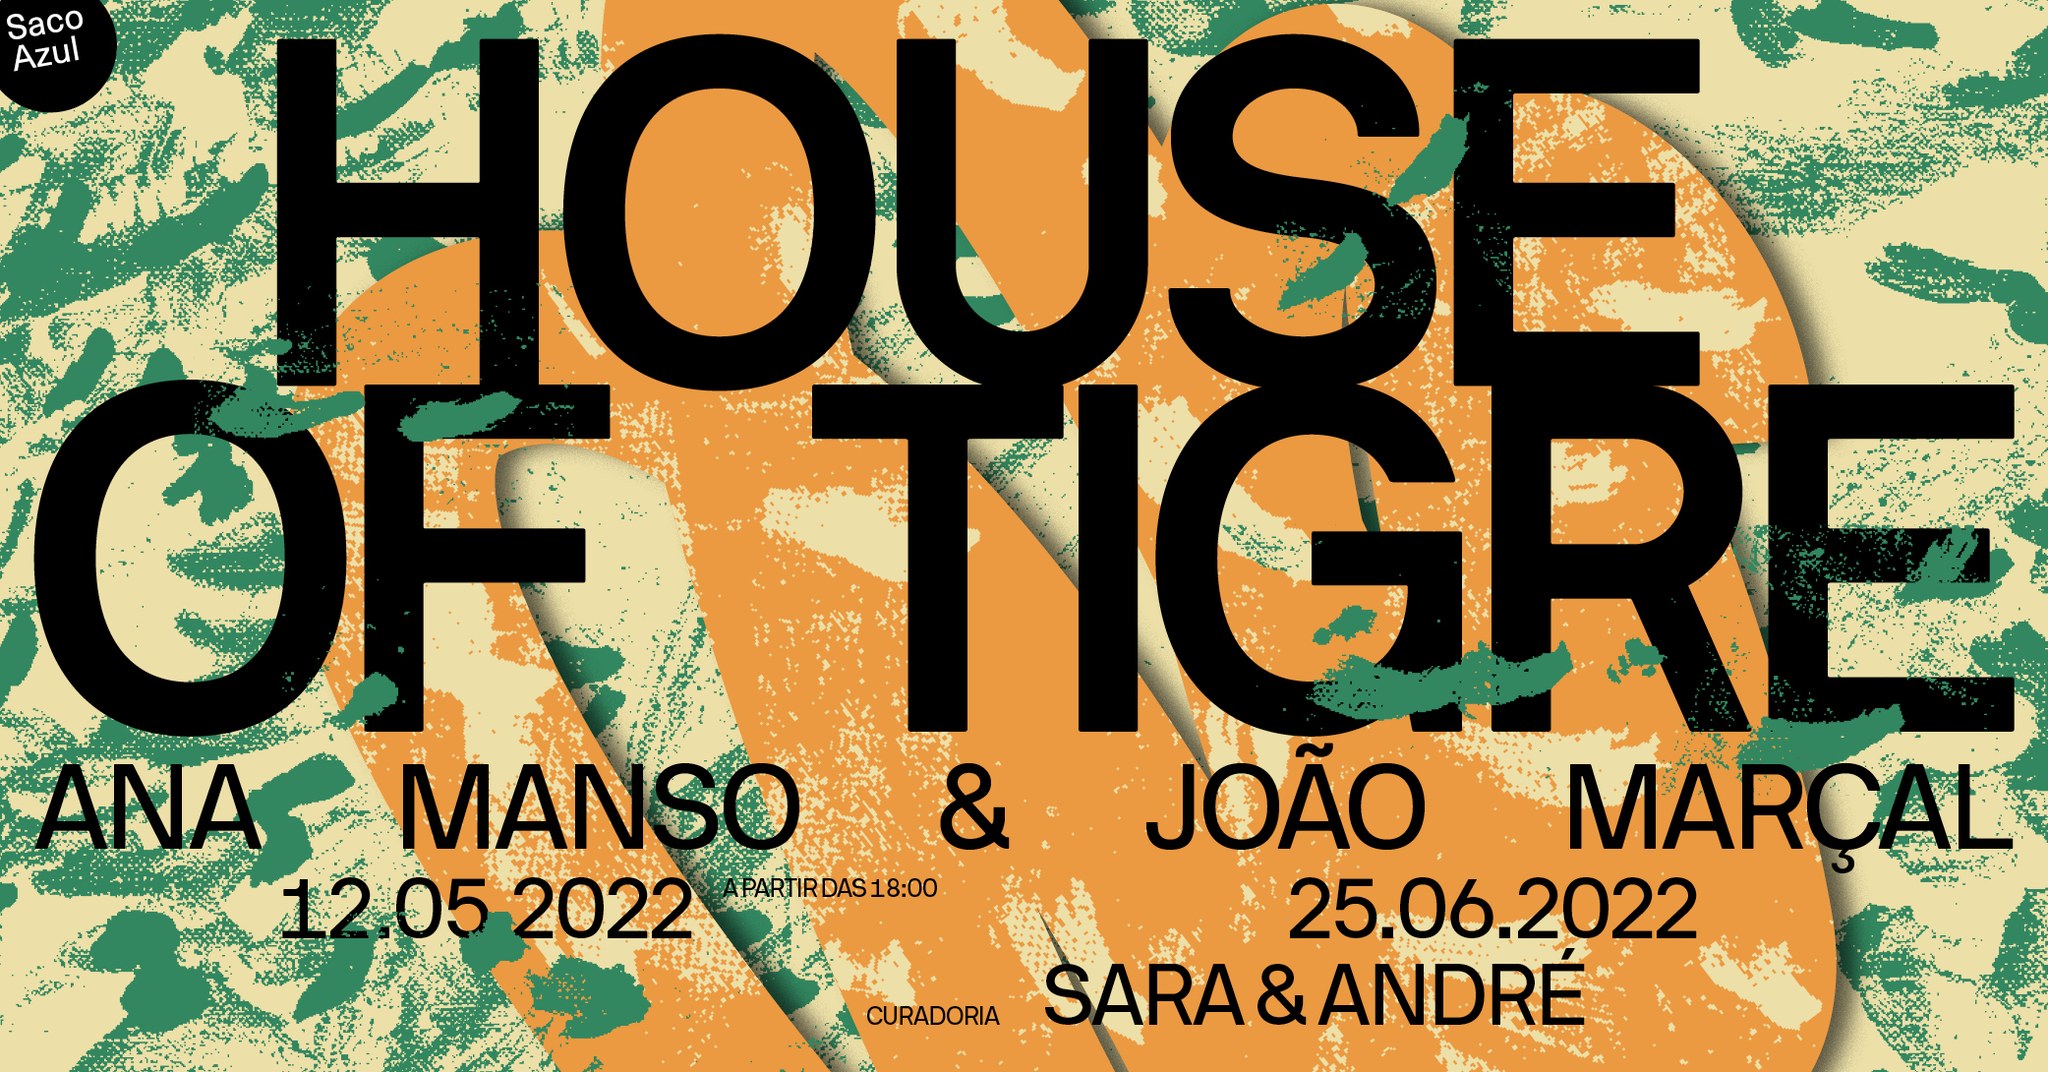 House of Tigre curadoria de Sara & André